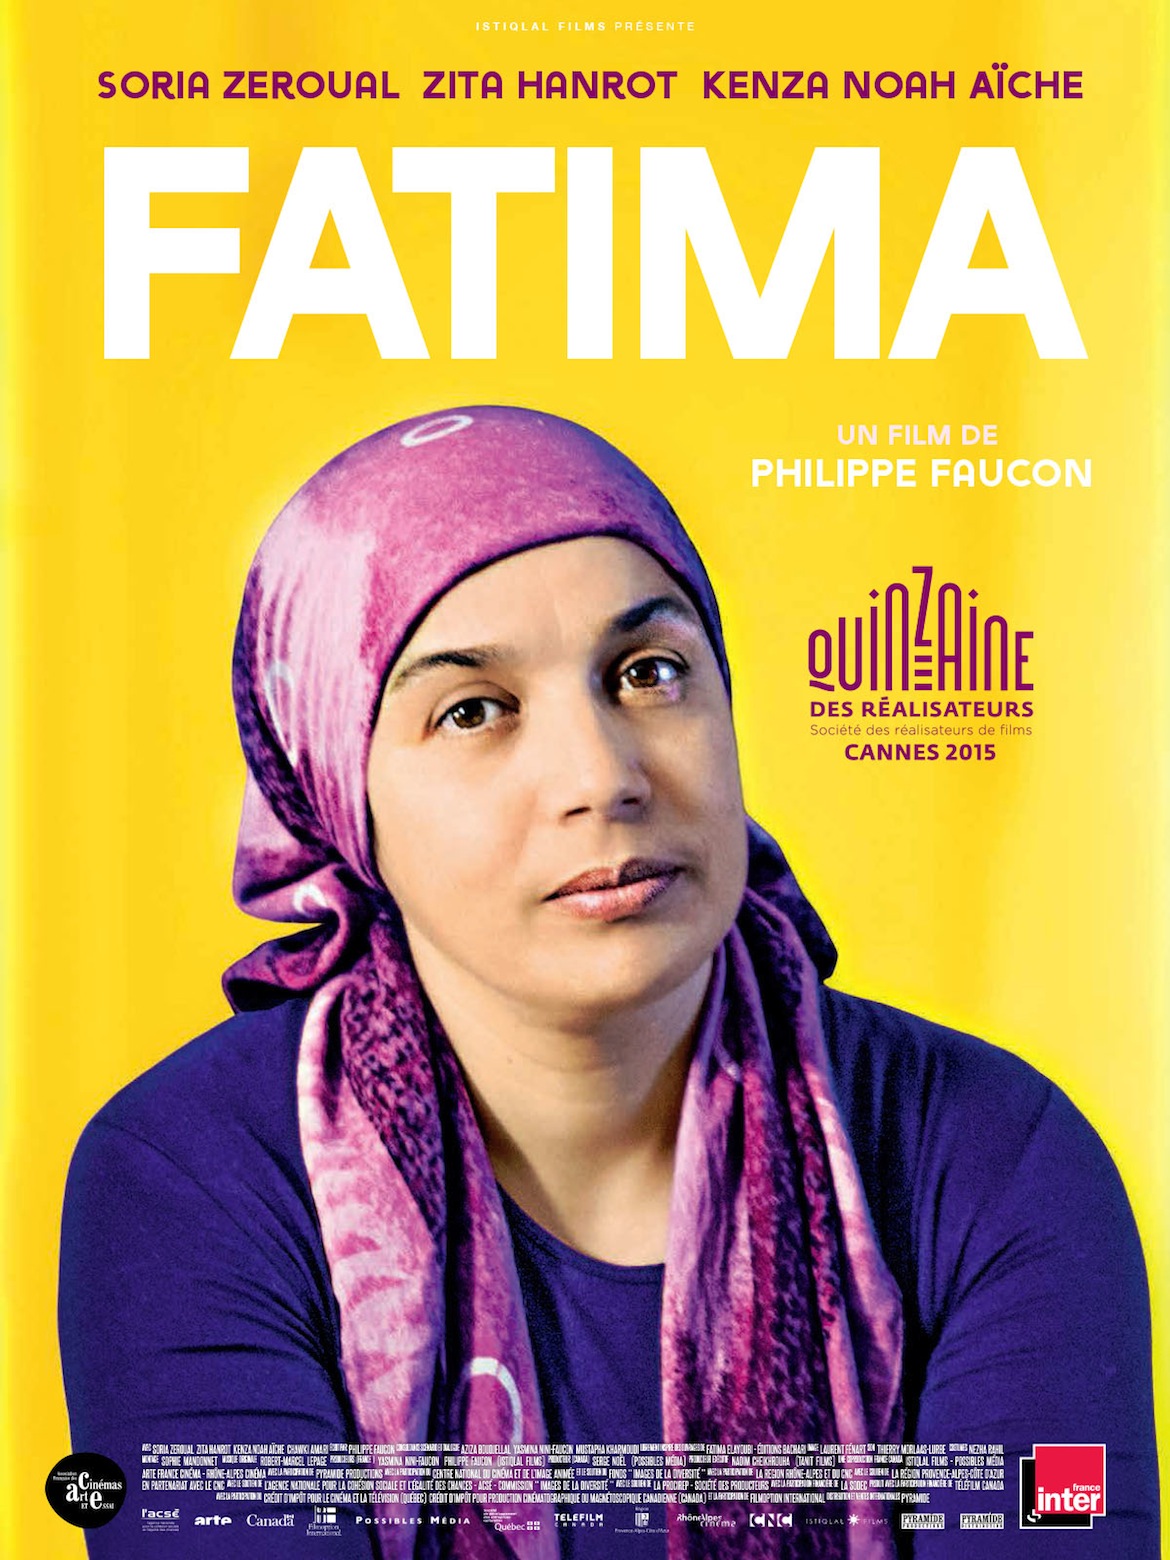 Fatima, un film de Philippe Faucon